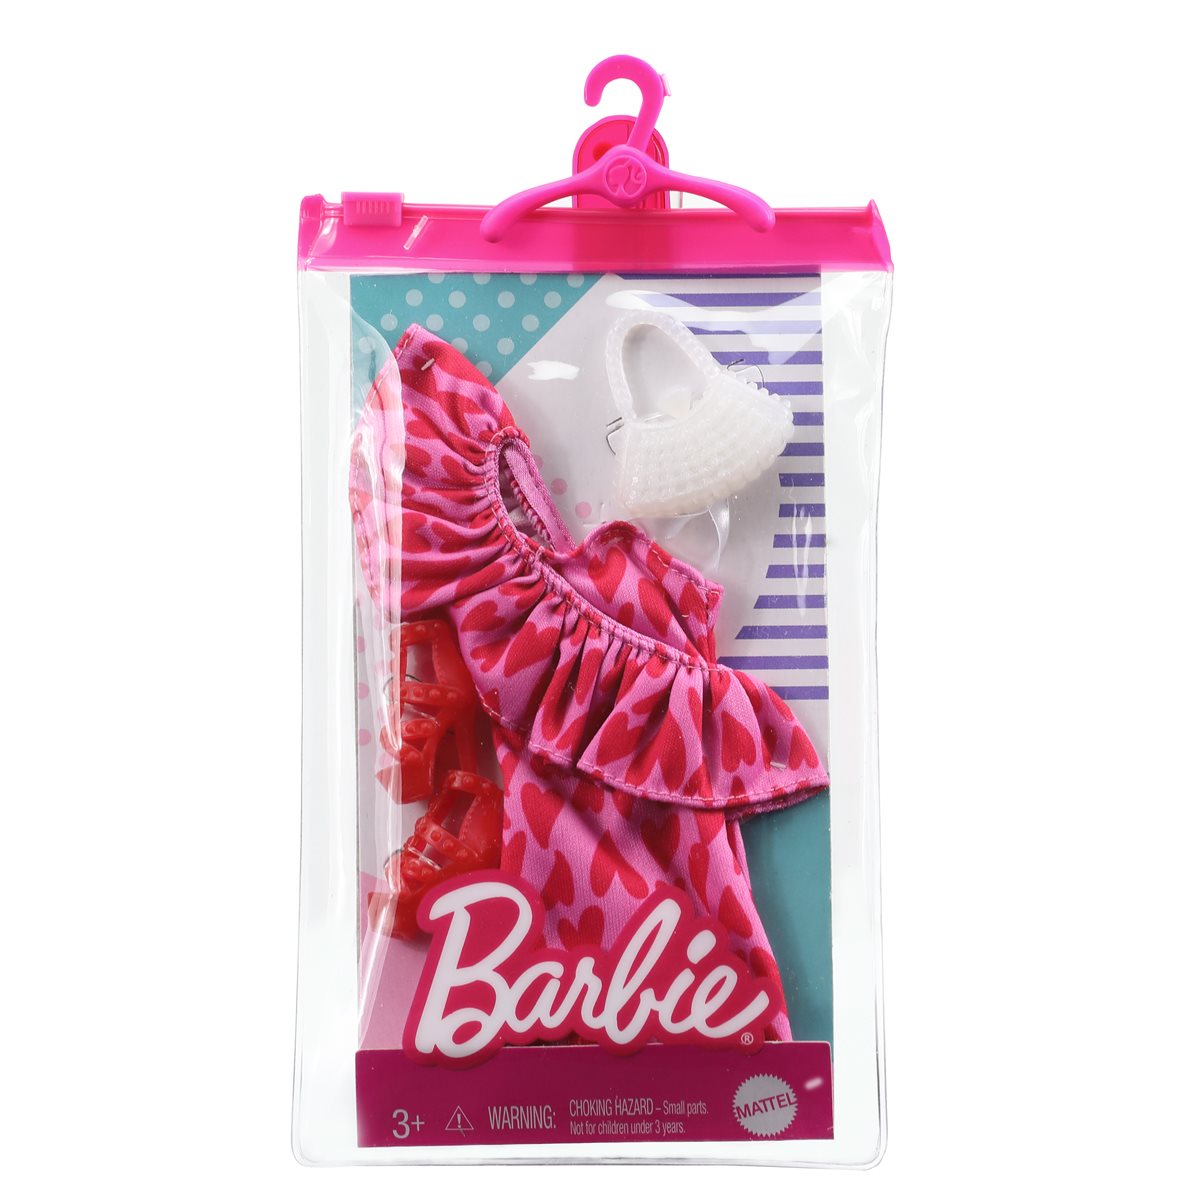 Barbie Fashion Activity Extension Pack Foiler